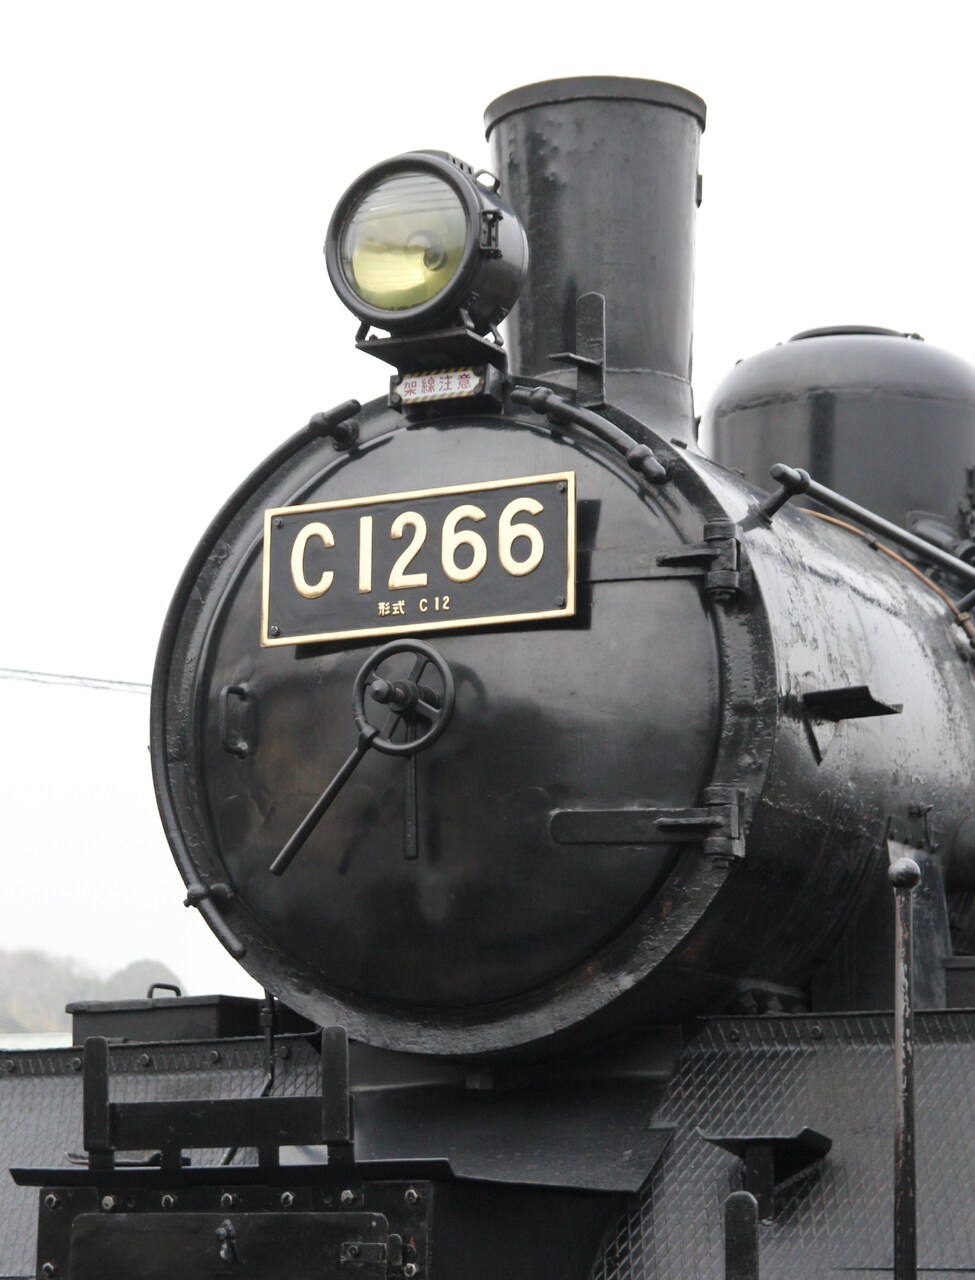 貴重 D51 823 デゴイチ ナンバープレート 稲沢 形式 鉄道 蒸気機関車 